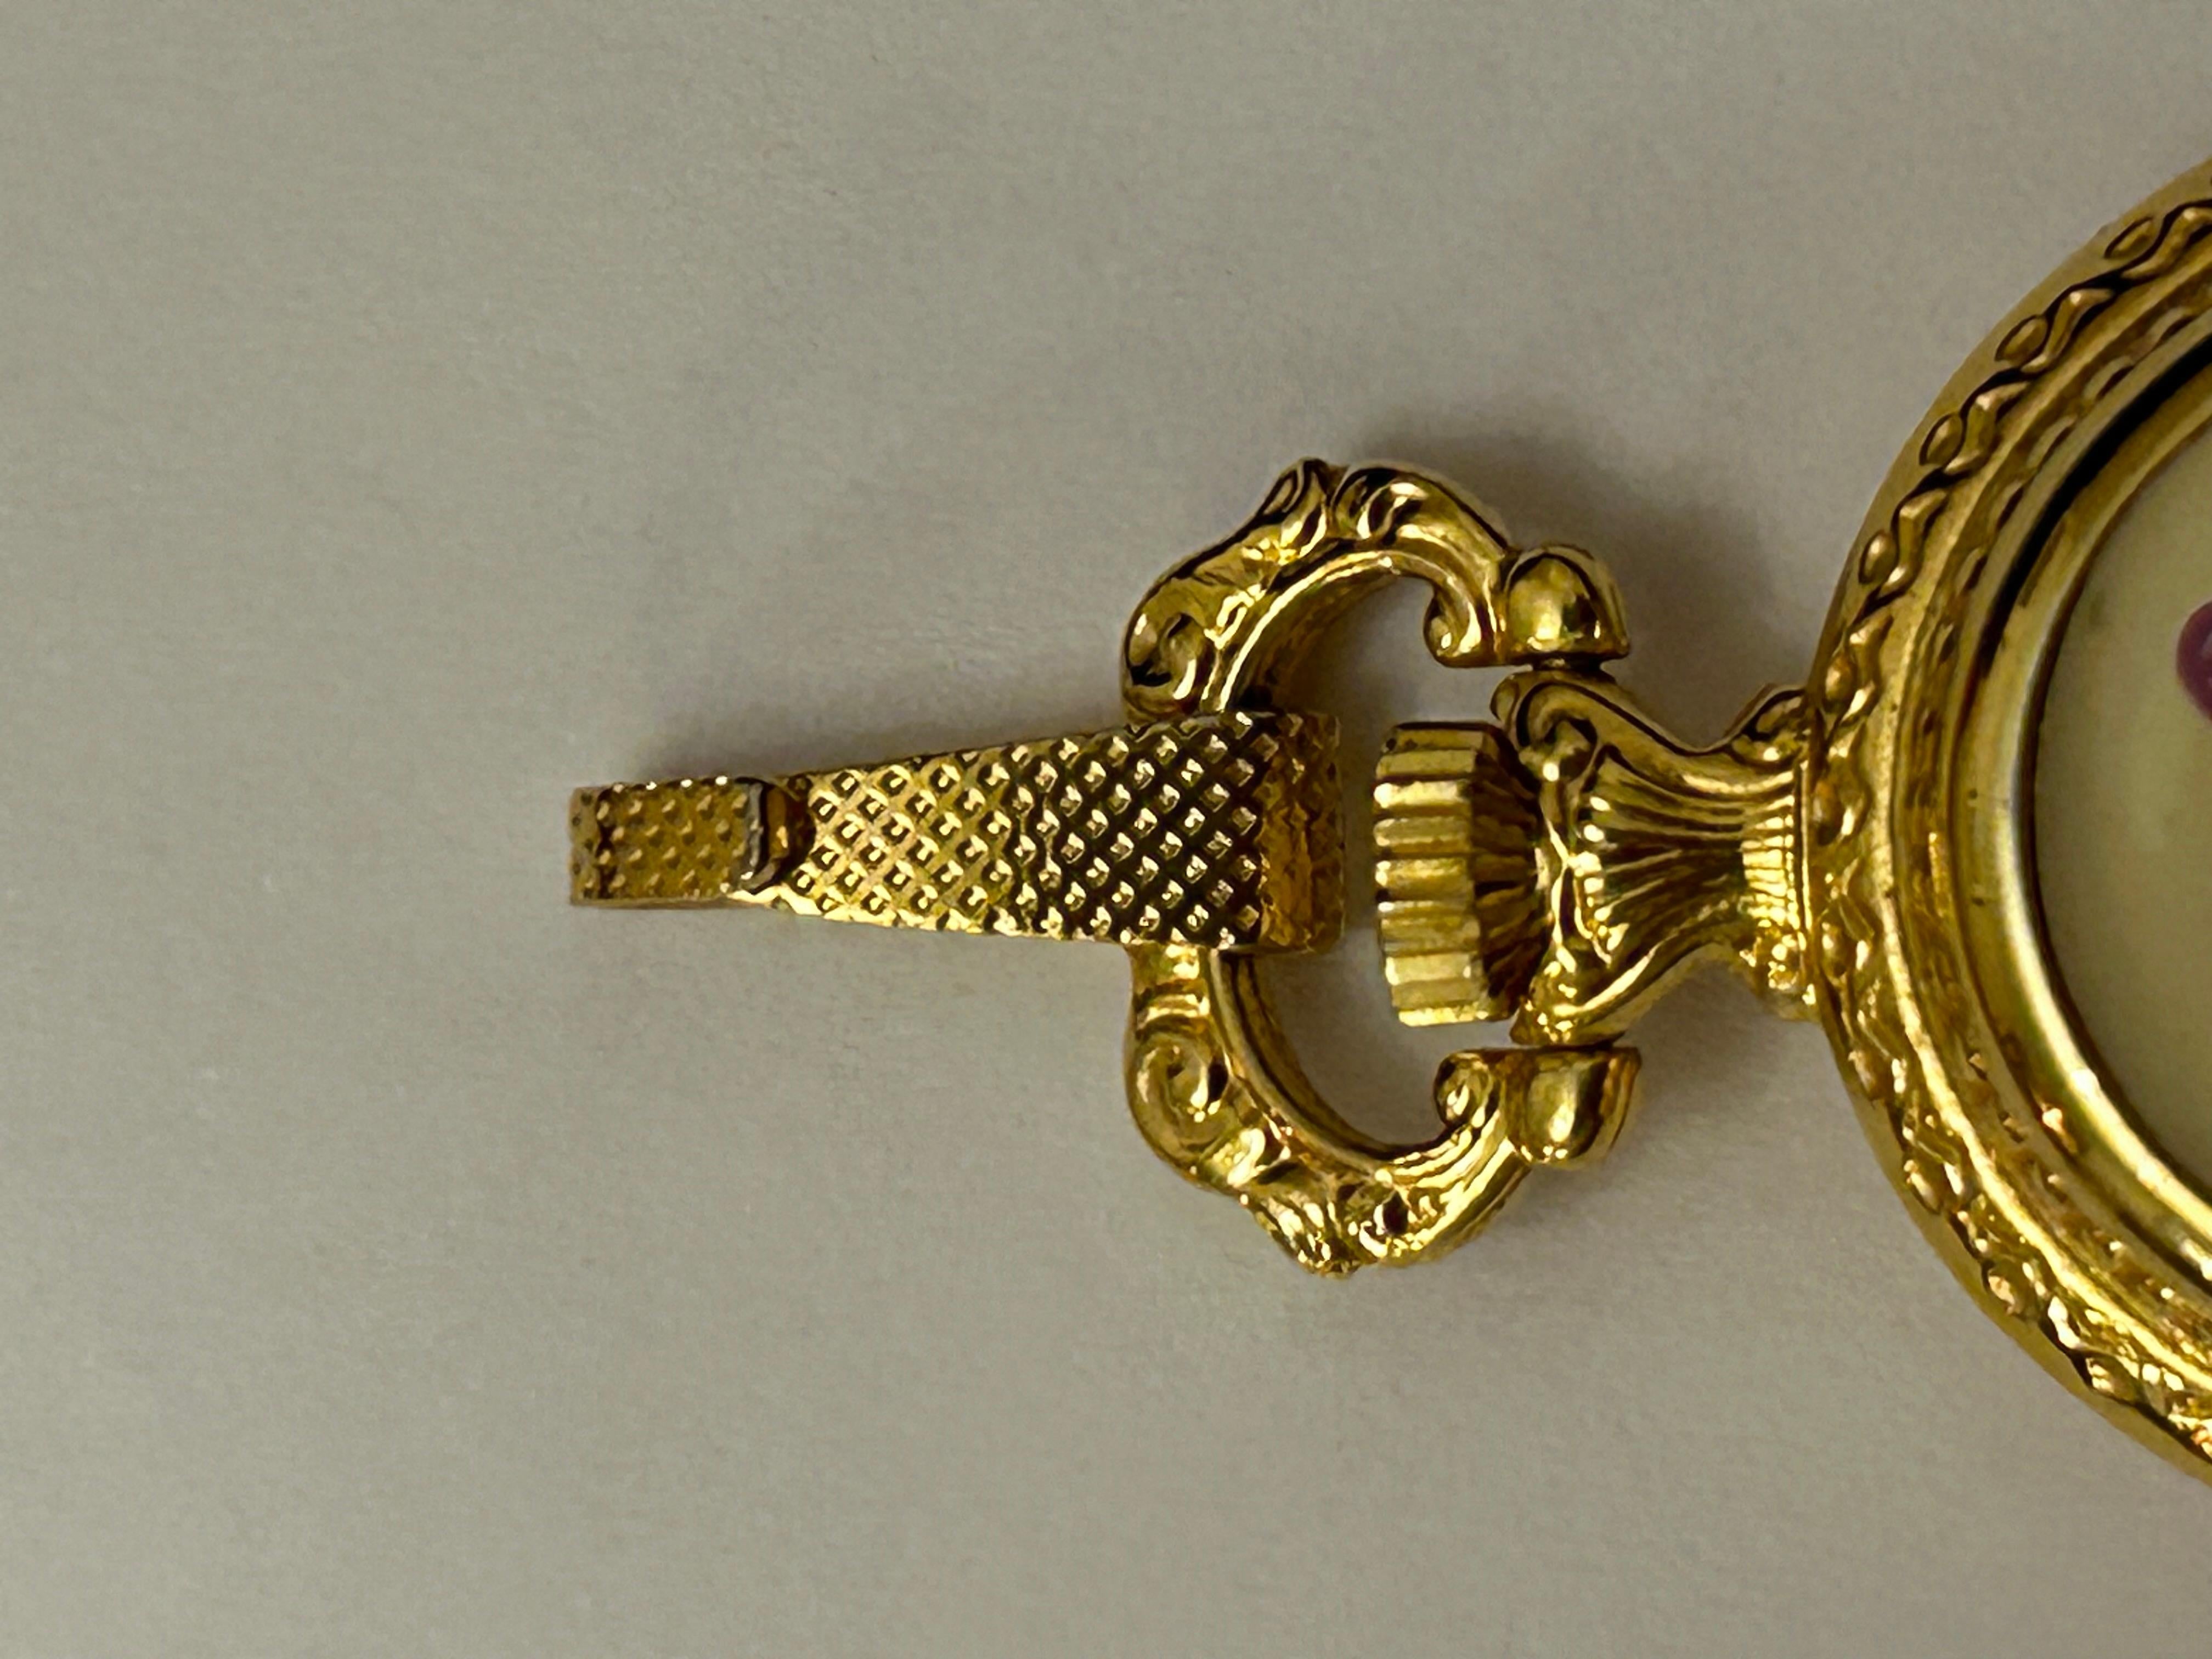 Äußerst seltene authentische Hermes Vintage-Uhr. 
Schöne Uhr in einem goldenen Metall-Anhänger eingeschlossen, ist die Vorderseite schön dekoriert Emaille mit Blumen gedruckt.  Lila, rosa und grün, wie ein schöner Blumenstrauß.
So einzigartig, wie